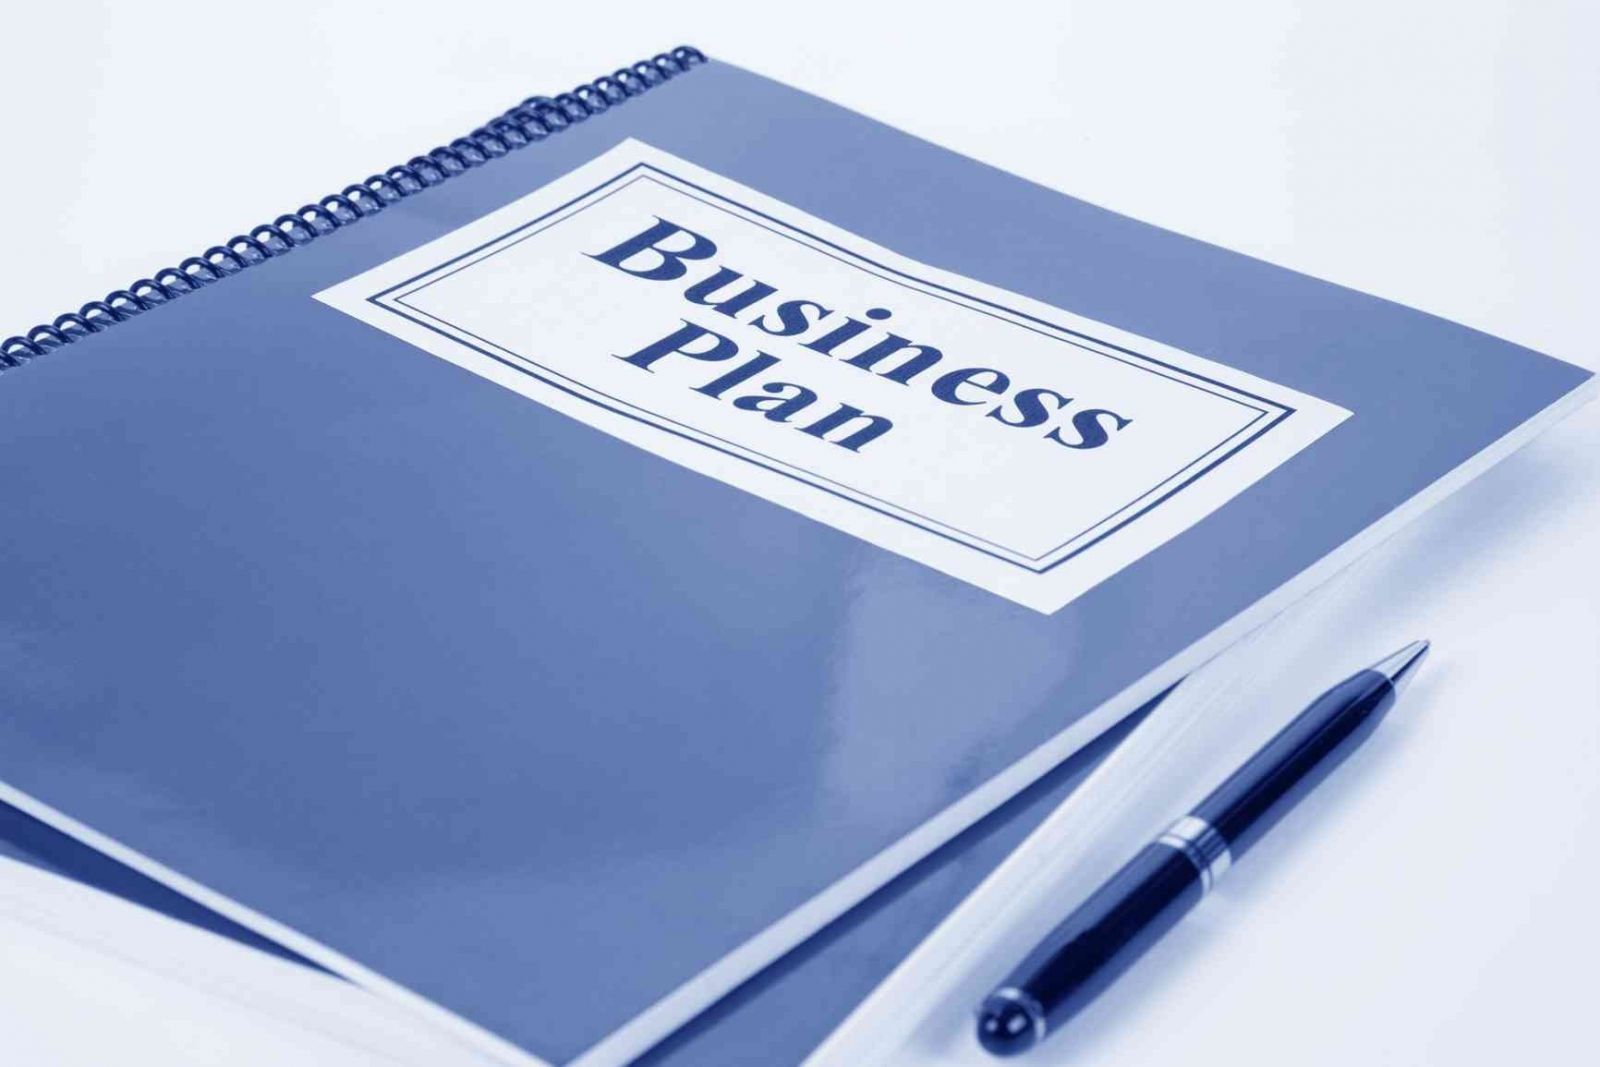 Как составить бизнес – план?